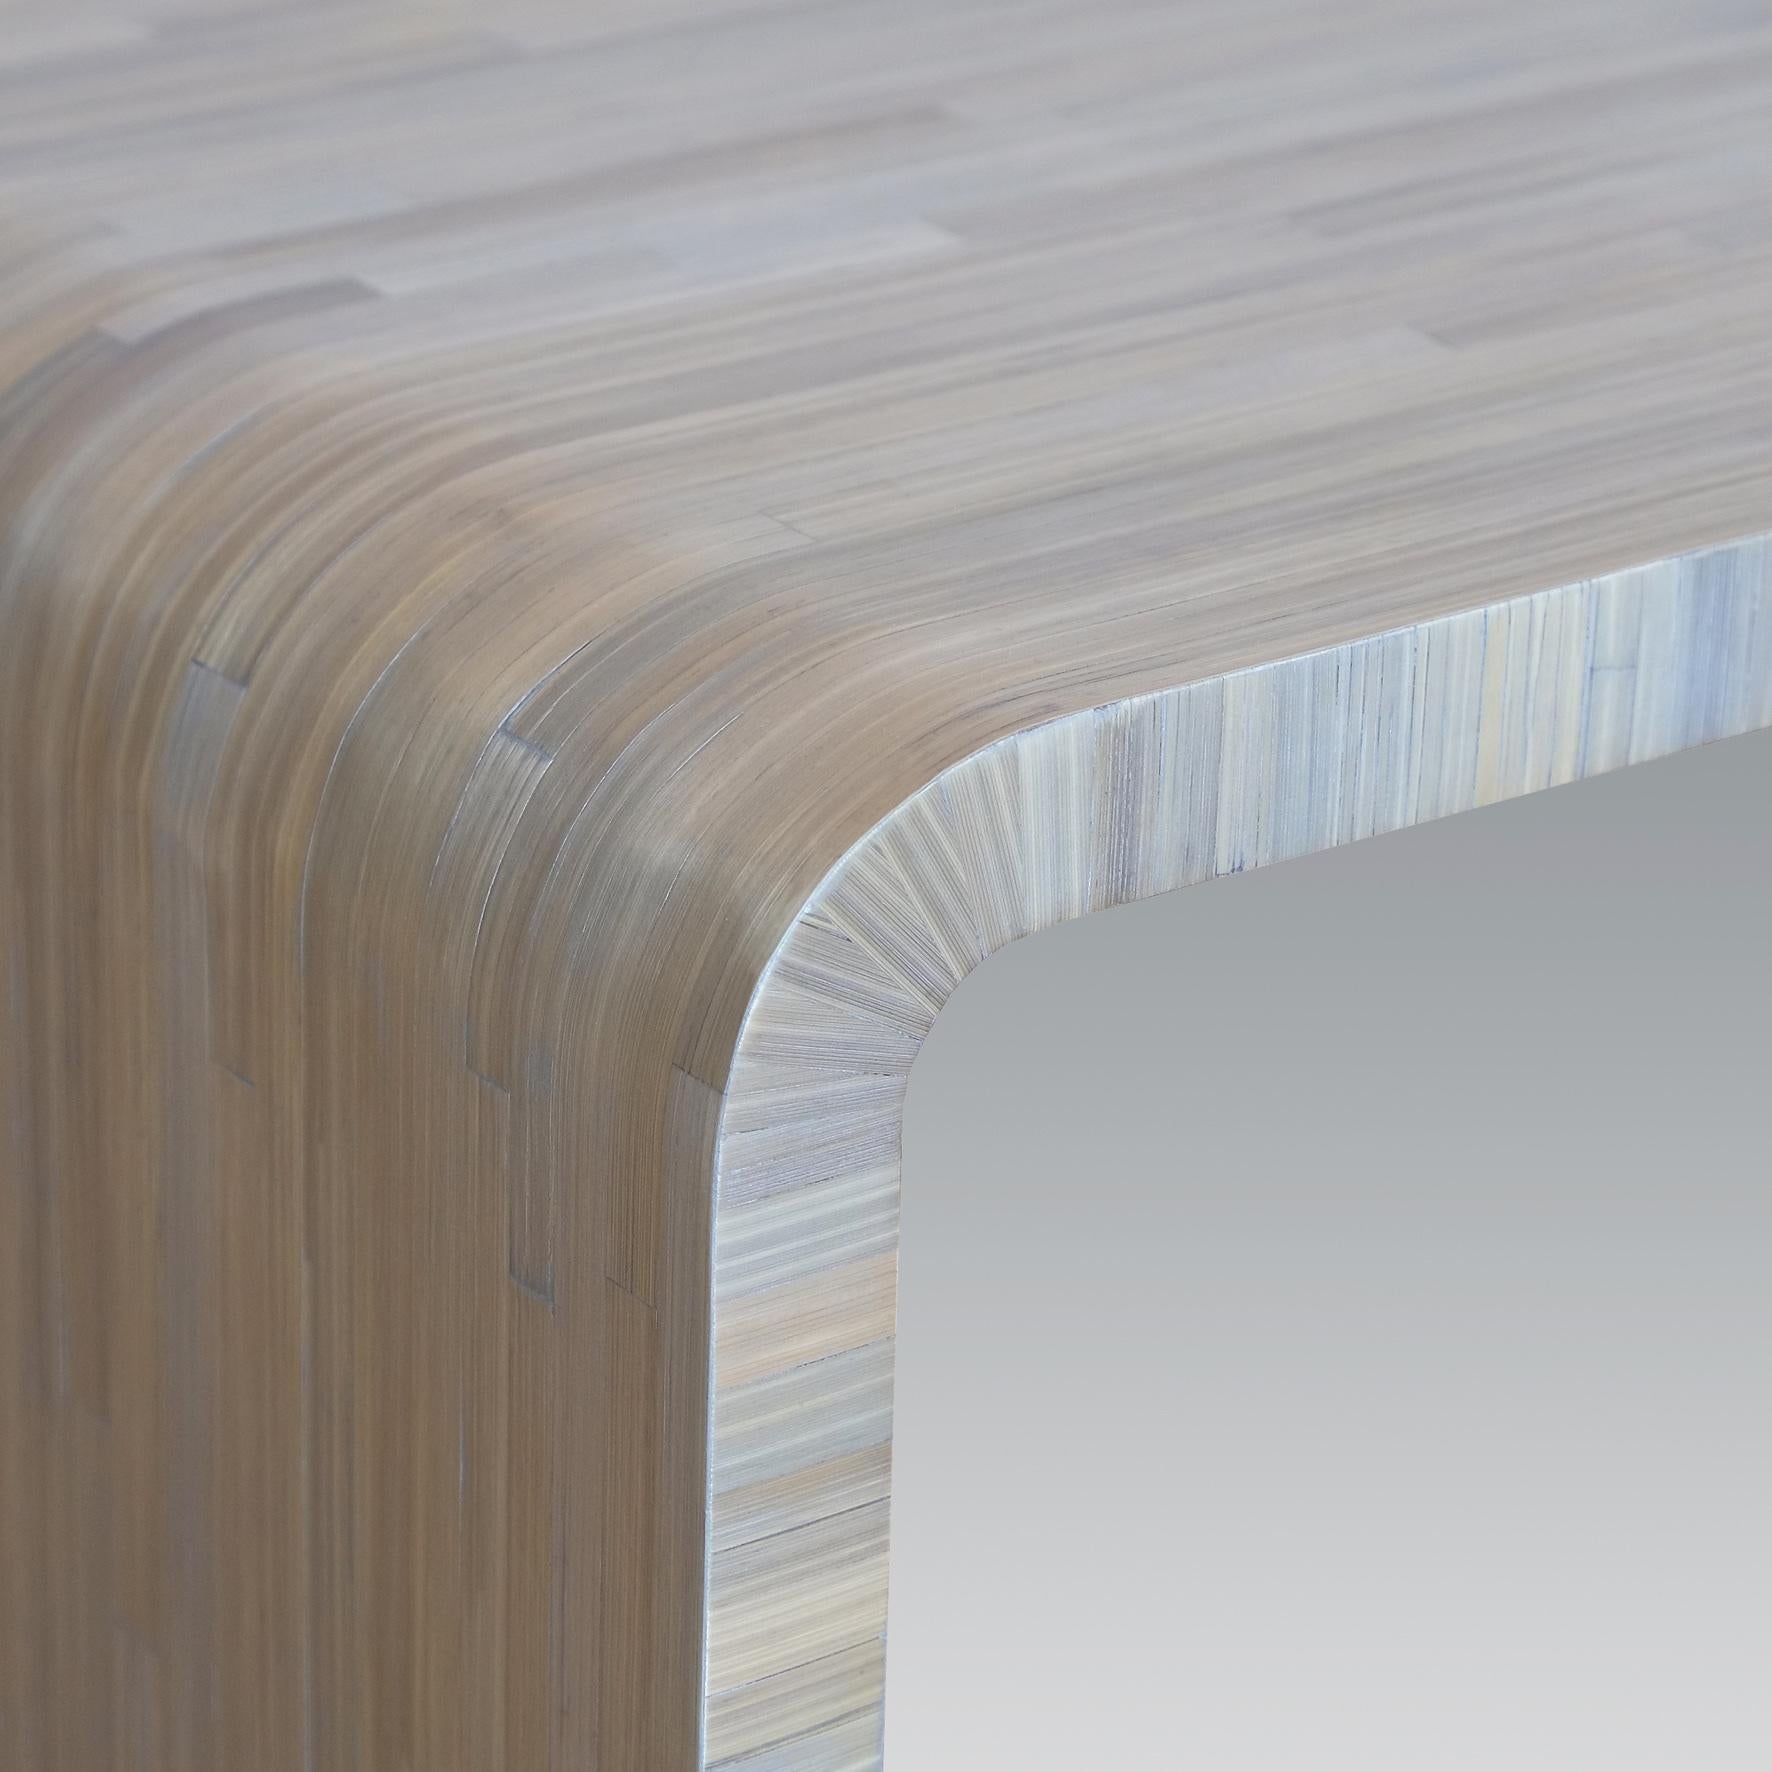 Une table basse rectangulaire en bois recouvert de marqueterie de paille d'argent. 

Cette table s'inspire des chefs-d'œuvre de l'Art déco français.
Elle est fabriquée dans des ateliers français selon les plus hauts standards de qualité.

Tout